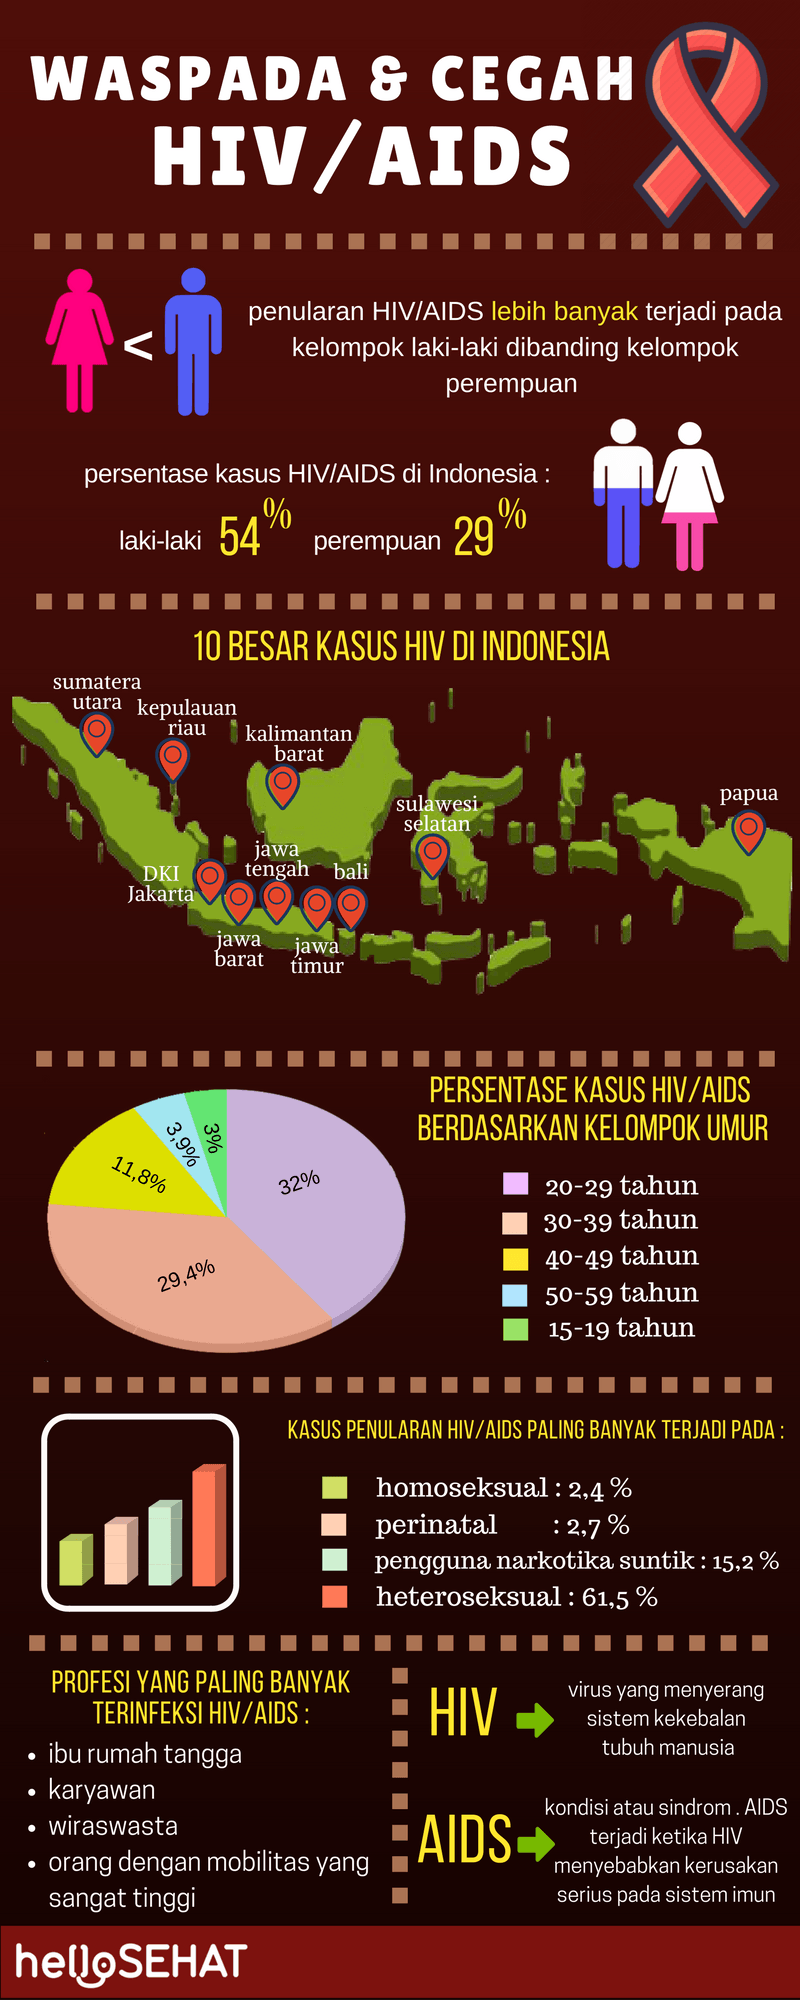 hello egészséges hiv segíti infographic az indonézia